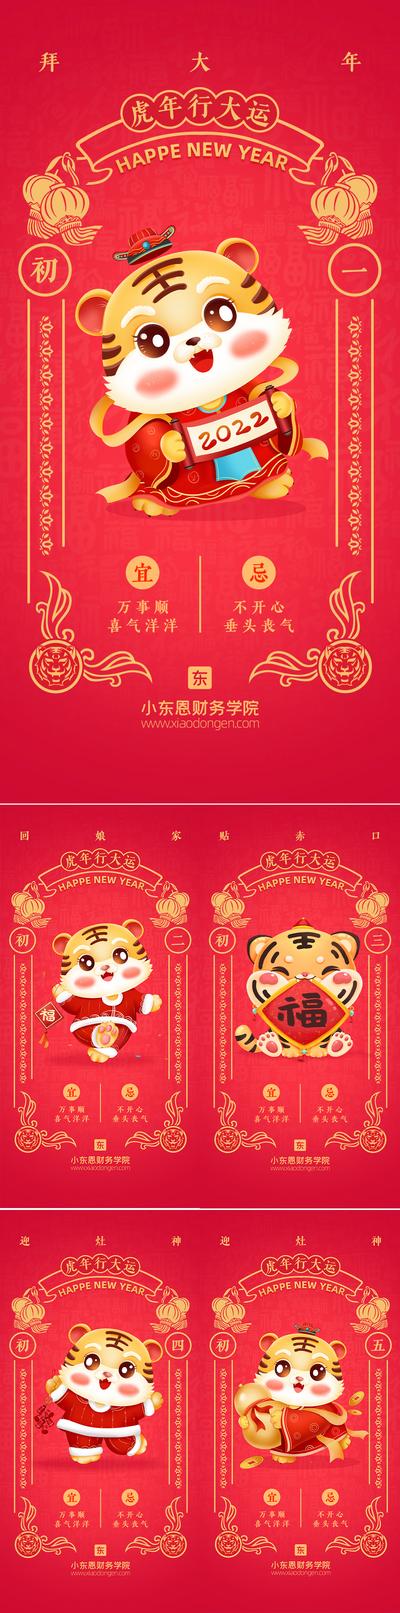 南门网 海报 中国传统节日 春节 插画 万年历 年俗 老虎 